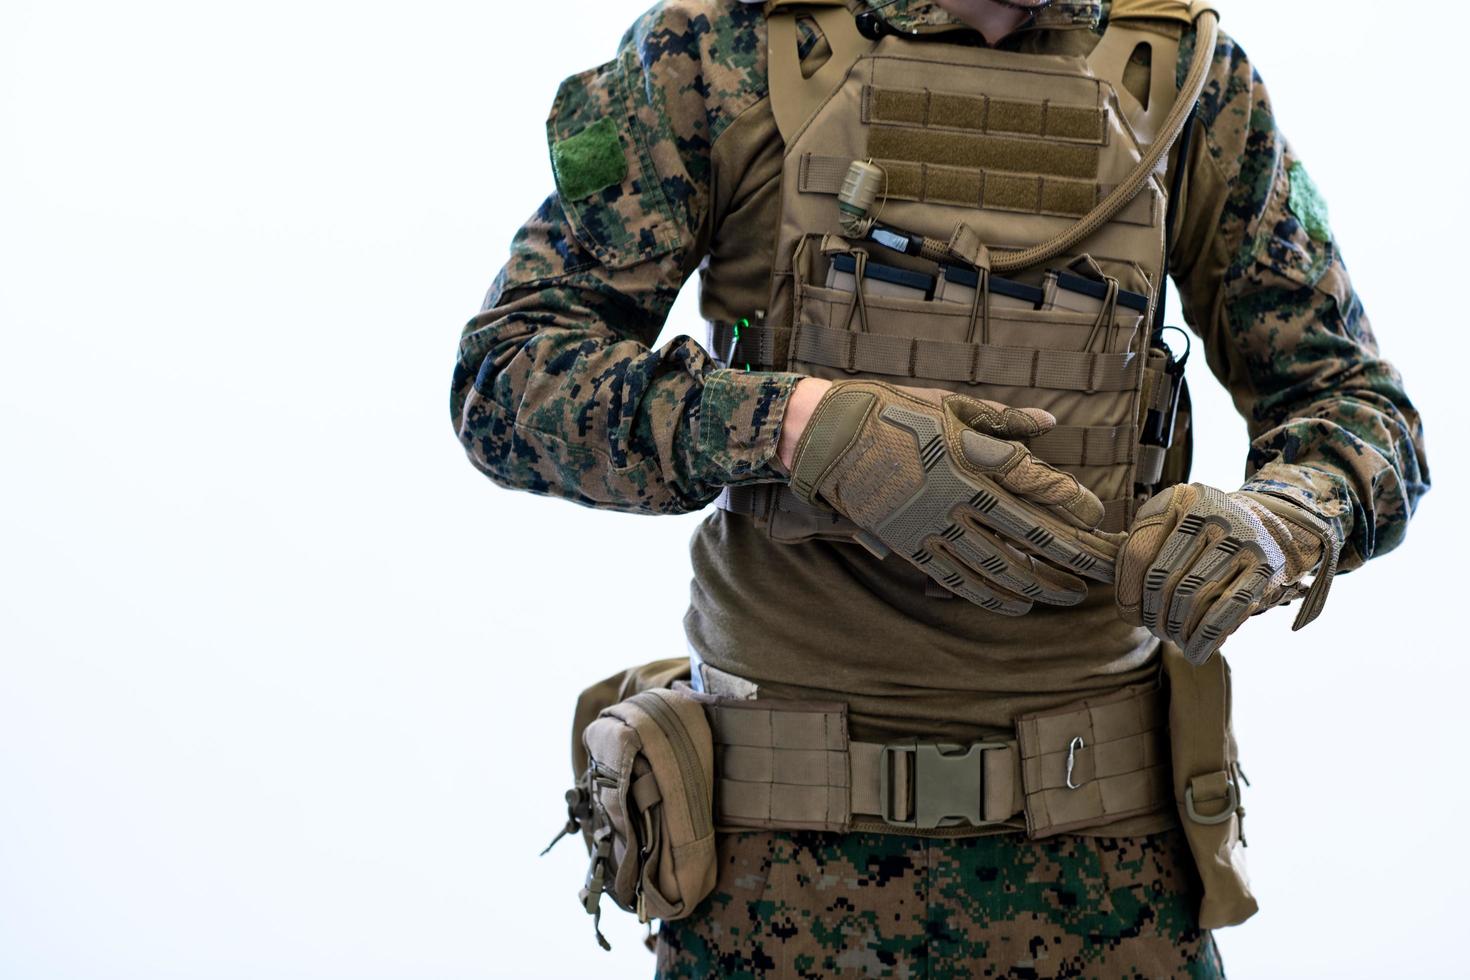 primer plano de las manos del soldado poniendo guantes protectores de batalla foto